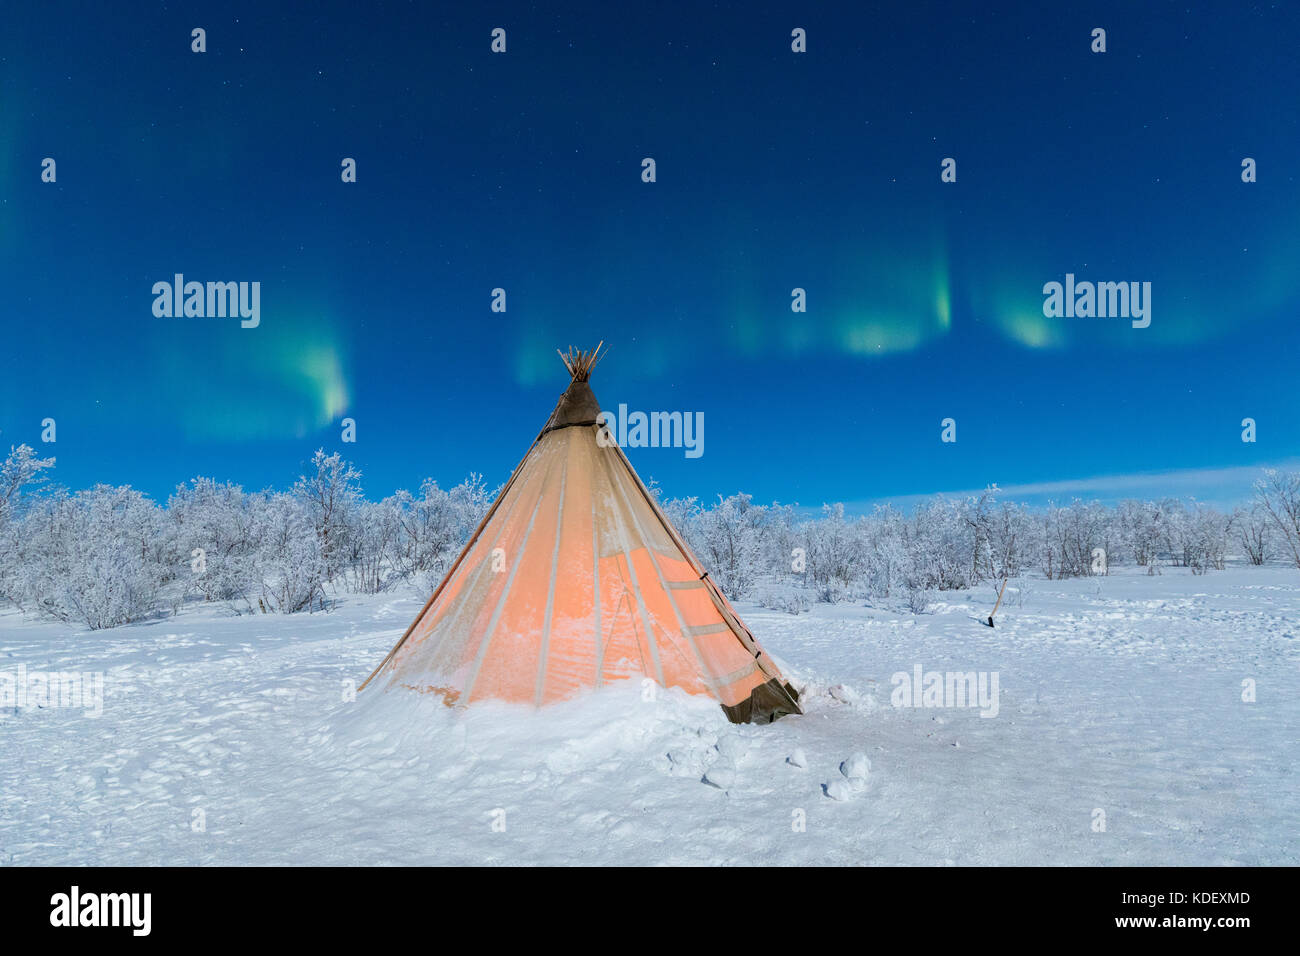 Sami isolé tente dans la neige sous les lumières du nord, abisko, municipalité du comté de Norrbotten, Kiruna, Lapland, Sweden Banque D'Images